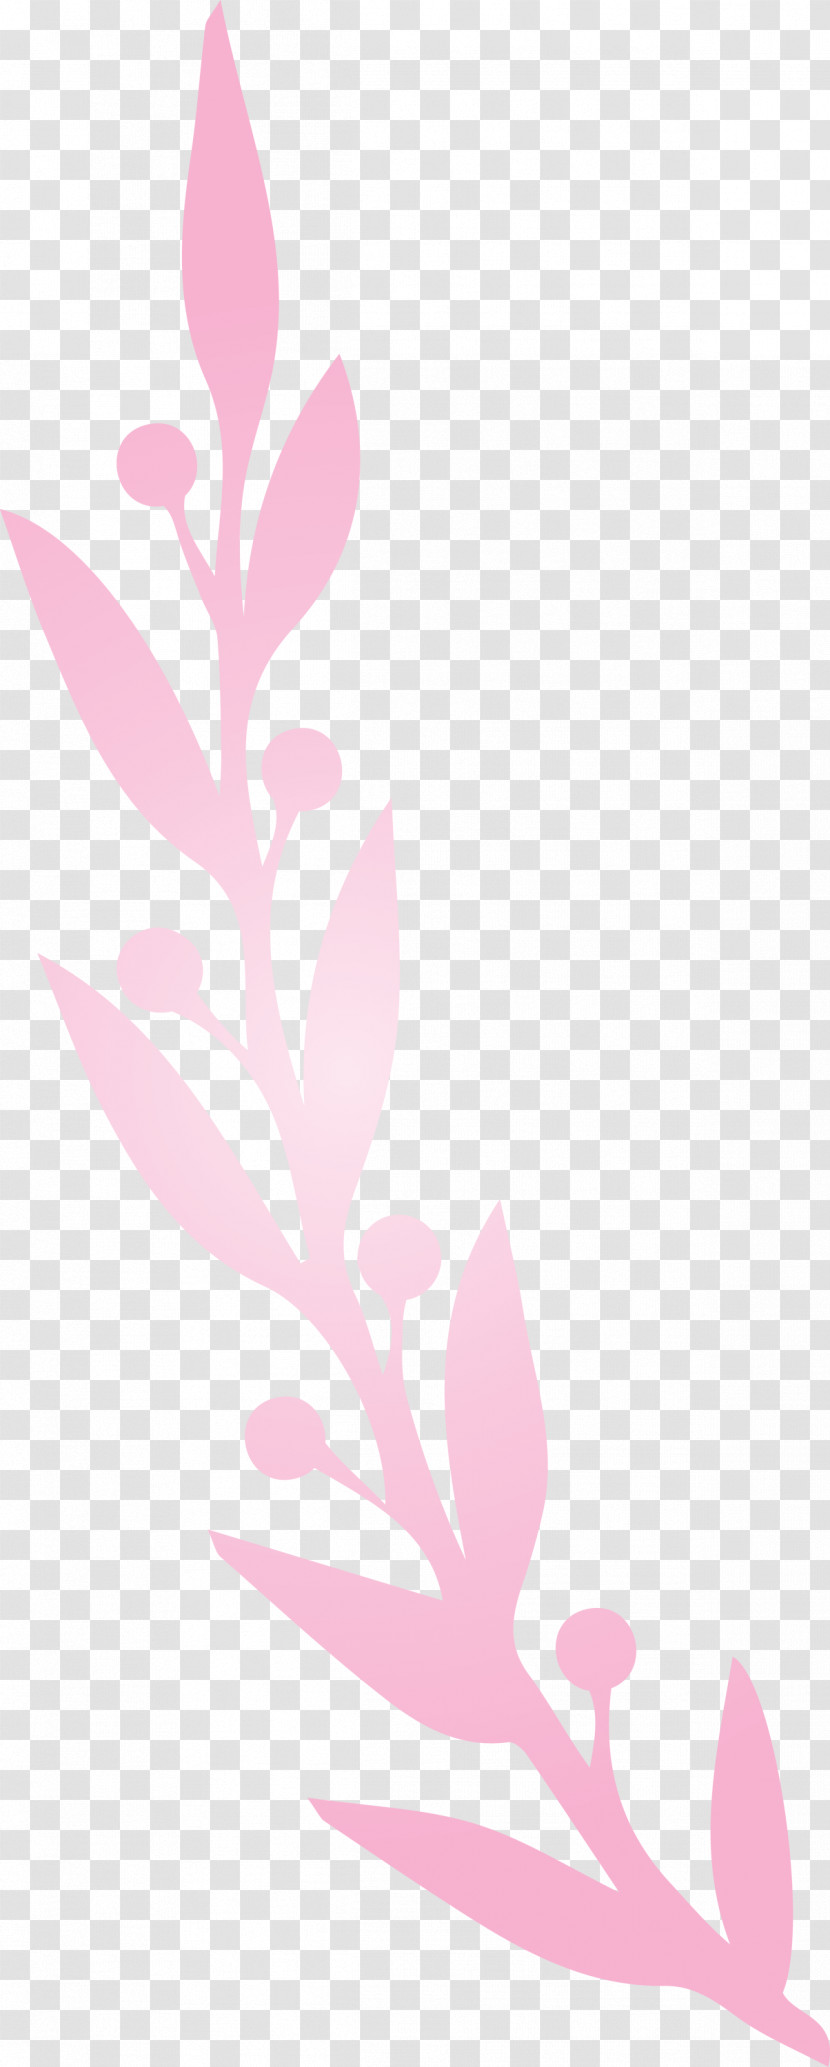 Plant Stem Petal Leaf Twig Pink M Transparent PNG